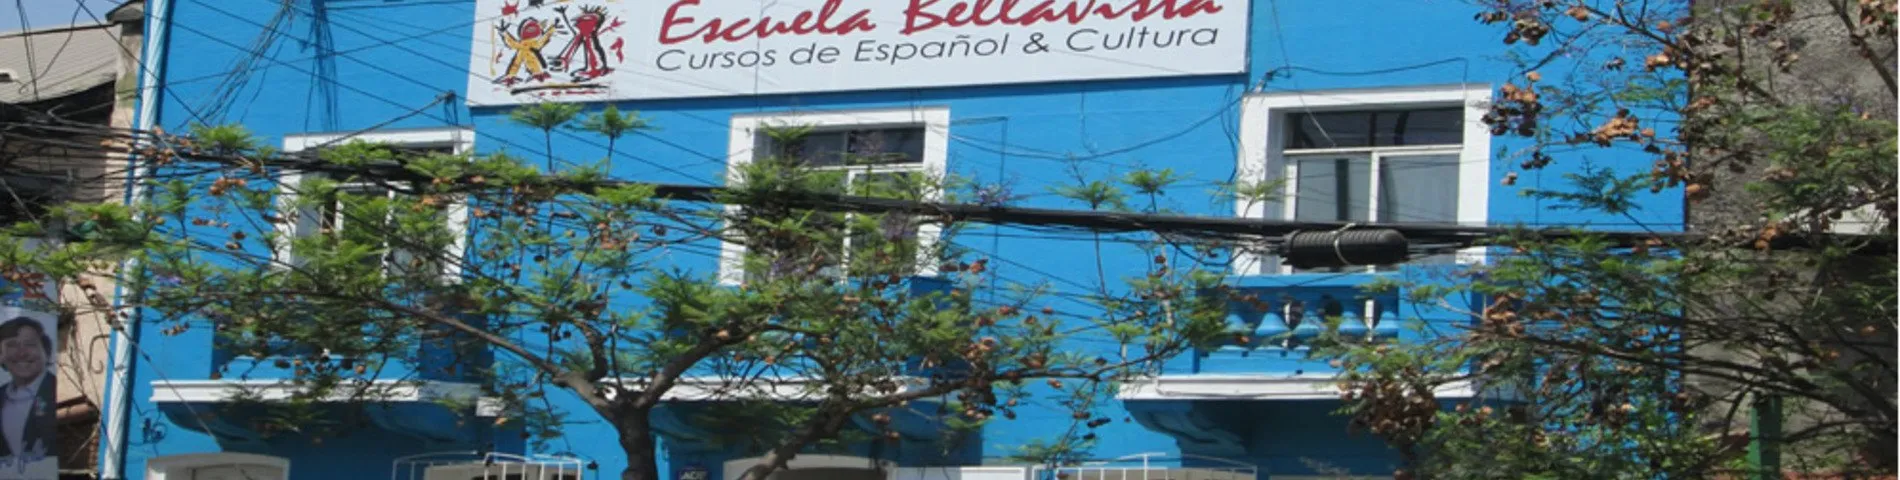 Escuela Bellavista รูปภาพ 1